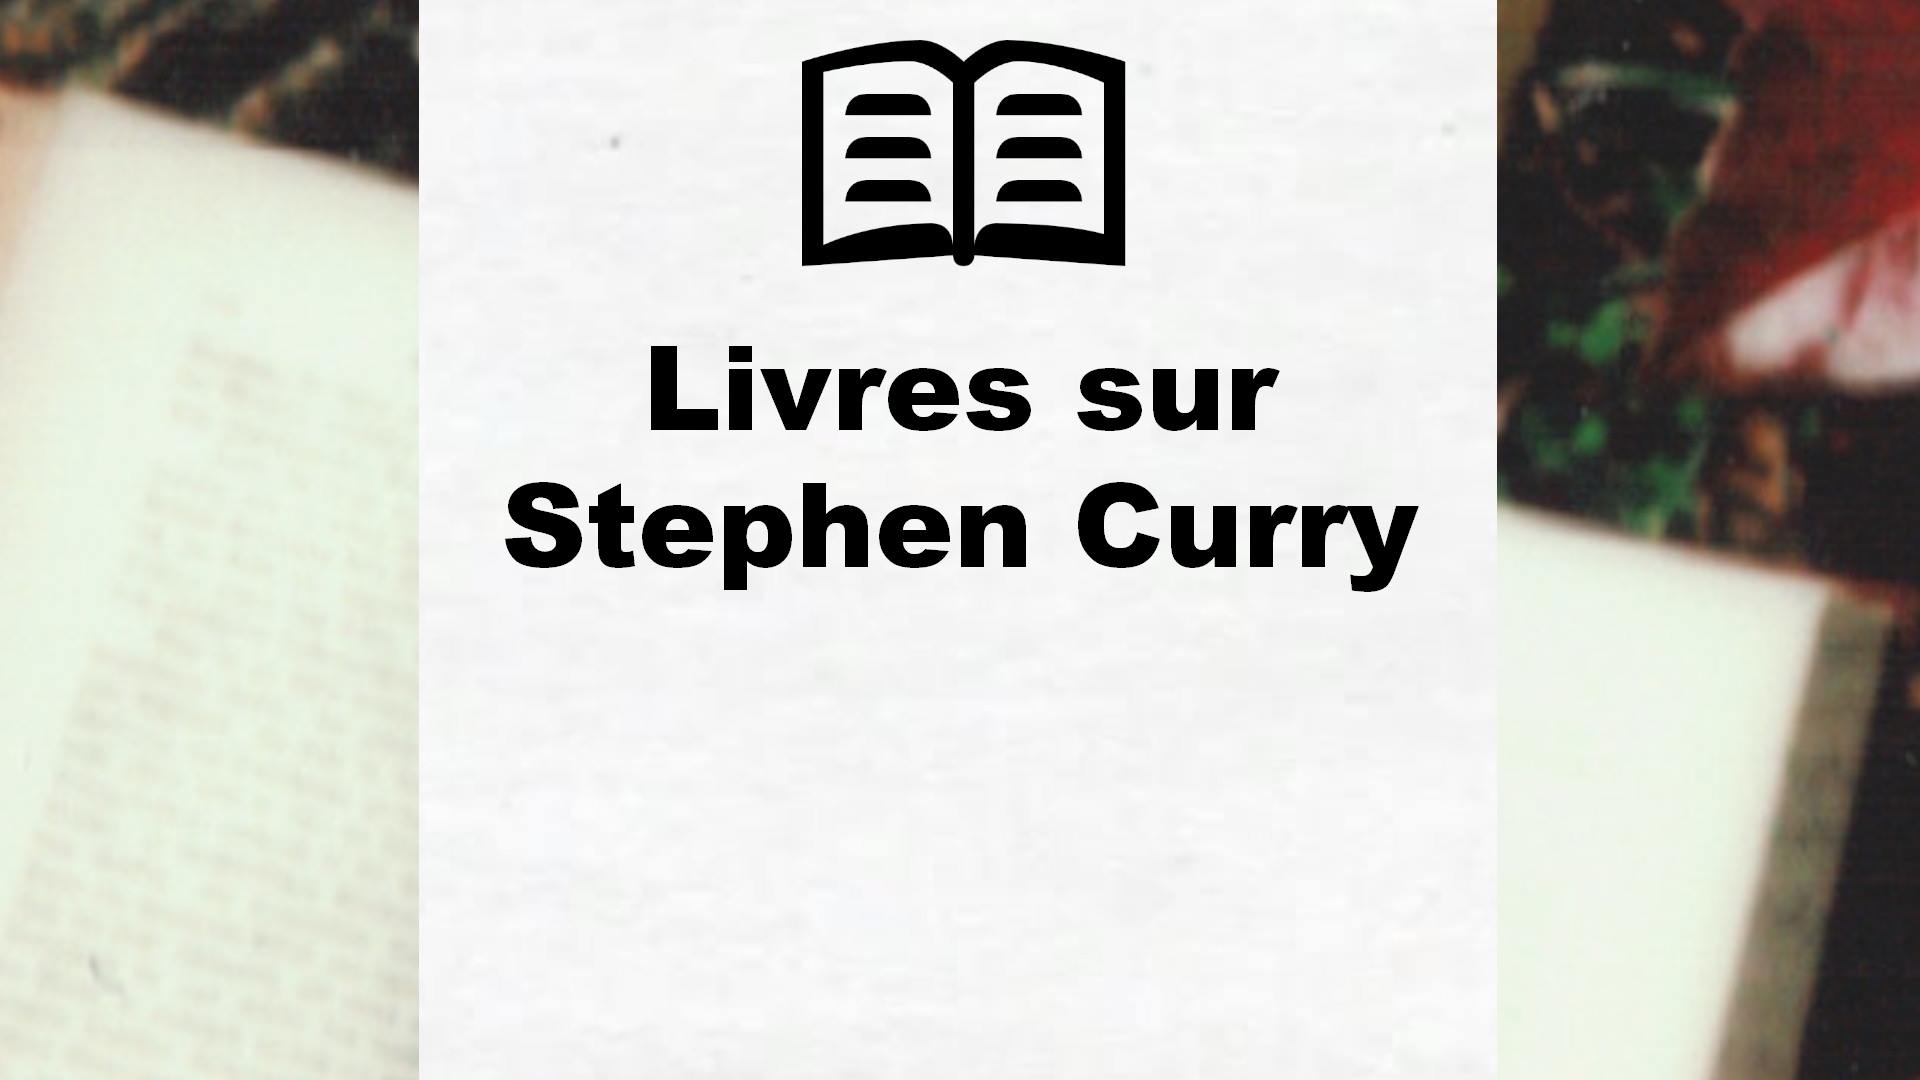 Livres sur Stephen Curry